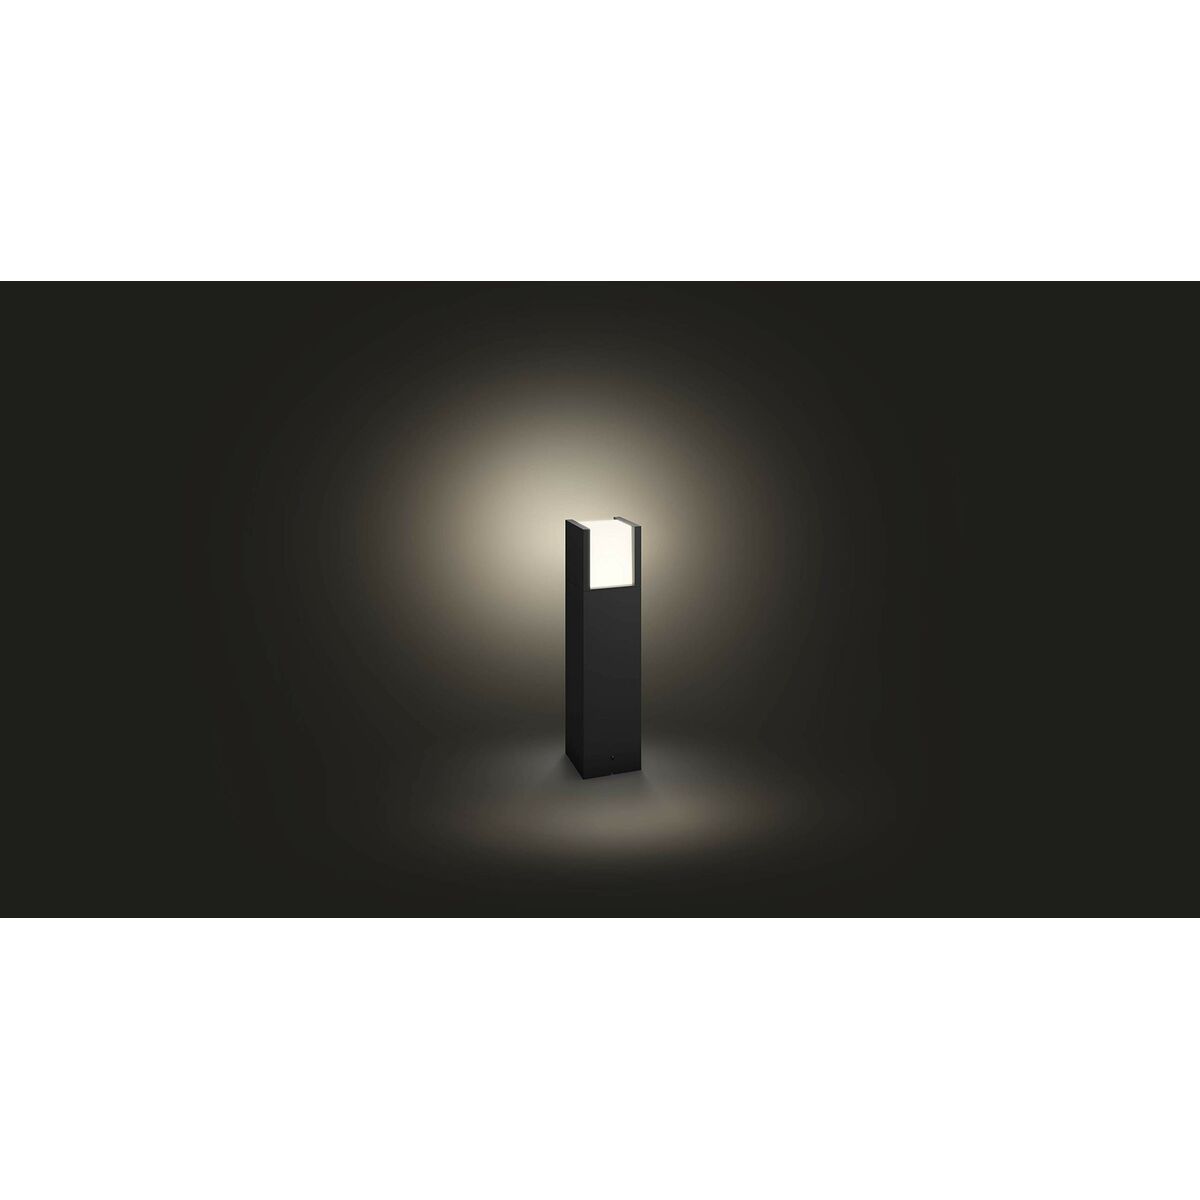 LED Lamp Philips Zwart Metaal Aluminium (Refurbished A)